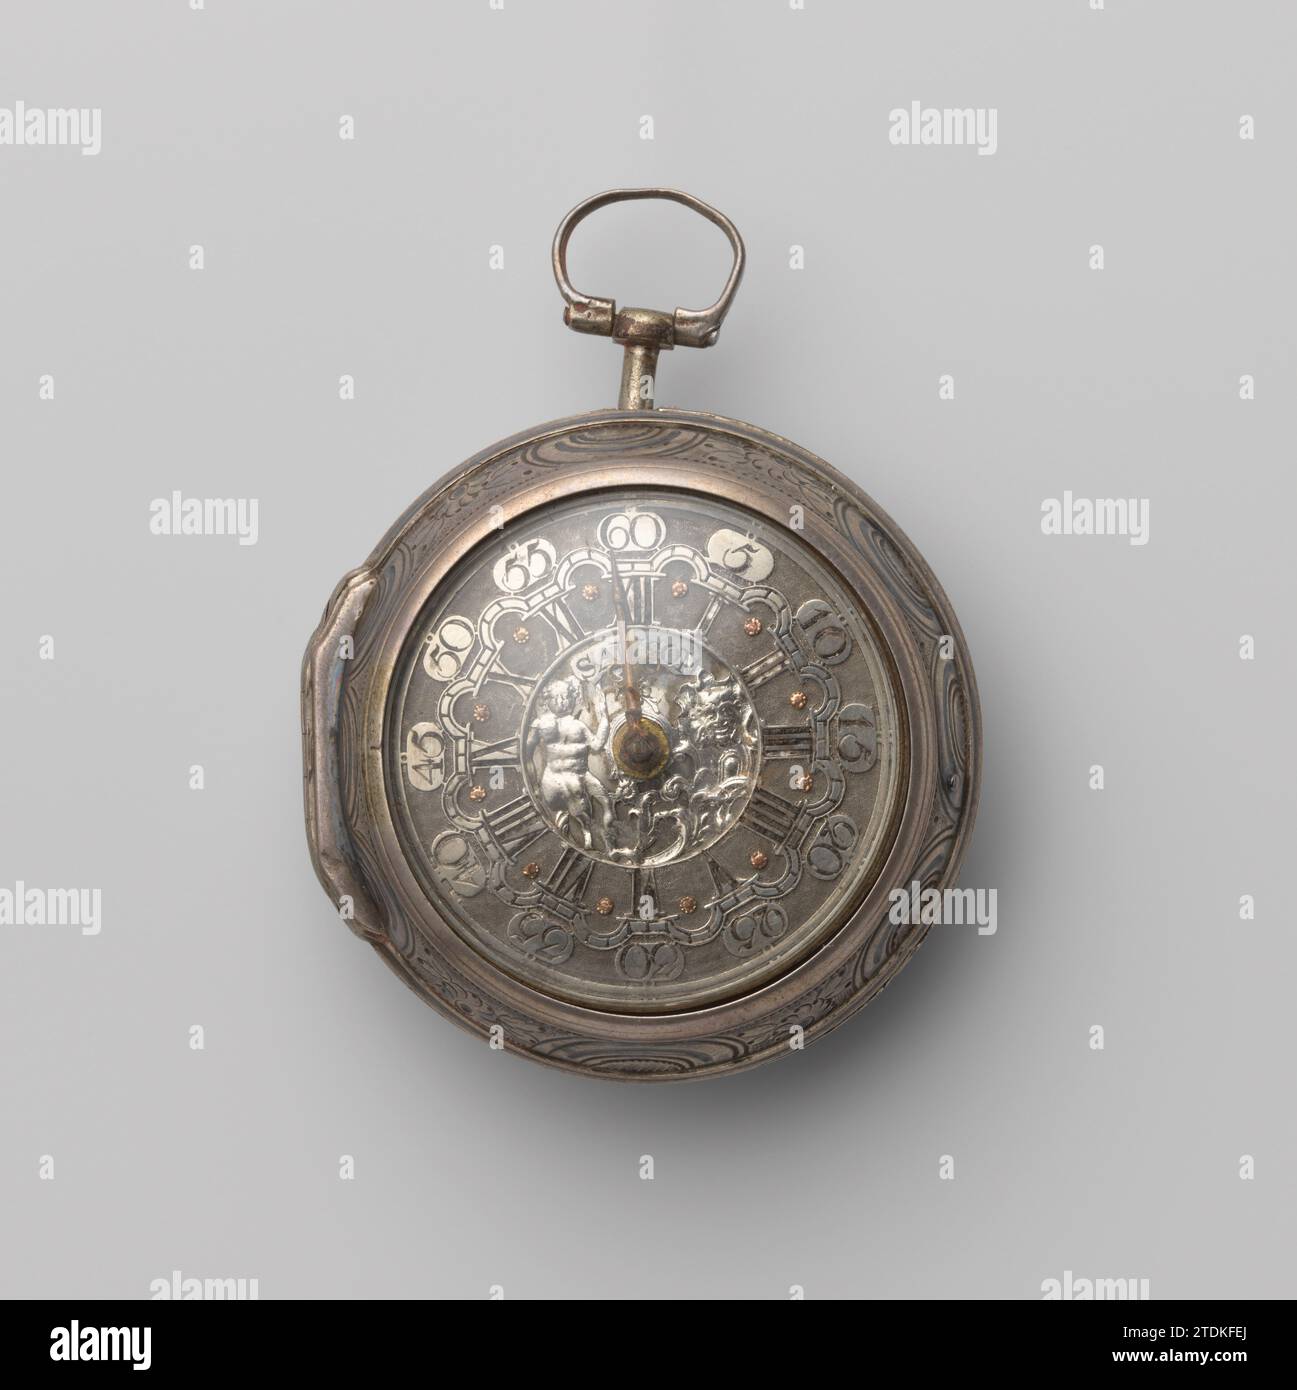 Silberne Uhr, in einem angetriebenen silbernen Schrank, Samson (Uhr), ca. 1740 - ca. 1760 Silberuhr (A), in einem angetriebenen silbernen Schrank (B). Das granulierte Zifferblatt ist mit Reliefbildern ausgestattet, auf denen die Stunden in römischen Figuren eingraviert sind und die durch silberne Bögen zwischen denen Bilder mit den Minutenfiguren verbunden sind. In der Mitte des Zifferblatts ist ein Ajour ein Kind, Ränge und eine Maske. Auf der Platine markierte 18120, Samson London. Silberner Uhrenschrank mit einer getriebenen und zitierten Szene, die links einen Mann und ein Kind für einen römischen Altar darstellt; Ein stehender Mann mit einem Stab, hinter dem zwei Frauen stehen Stockfoto